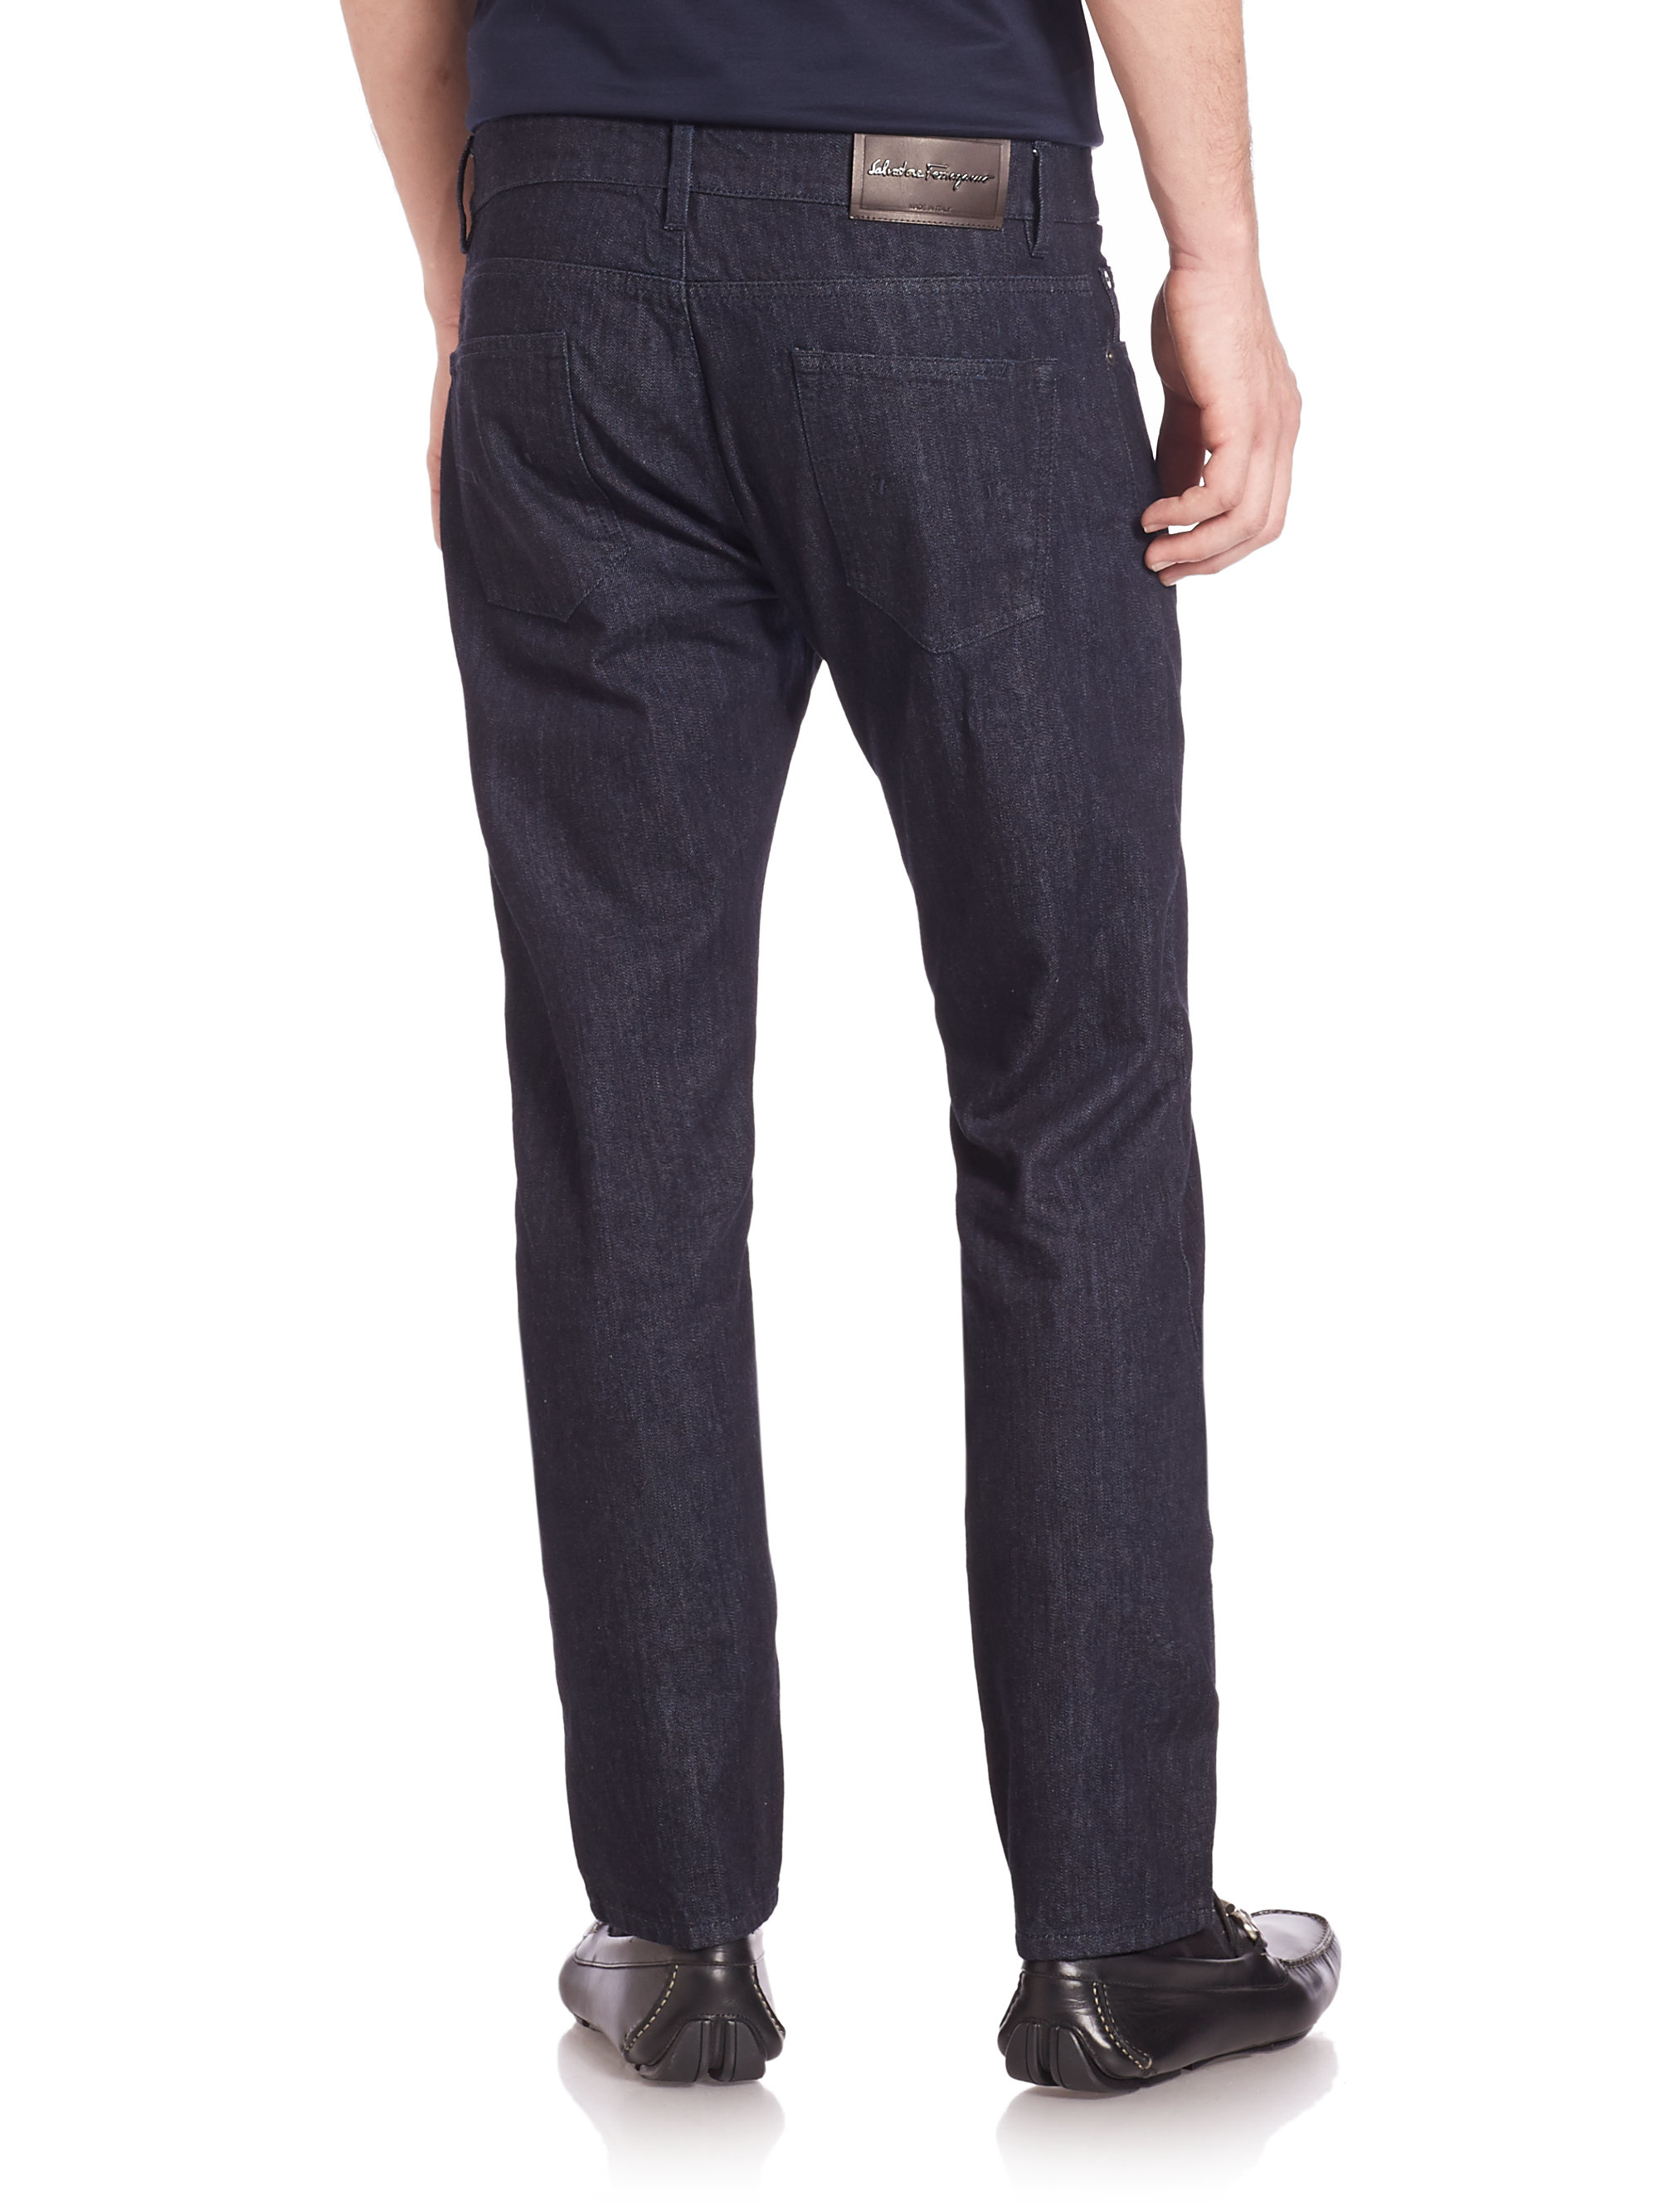 Lyst - Ferragamo Slim-fit Jeans in Blue for Men